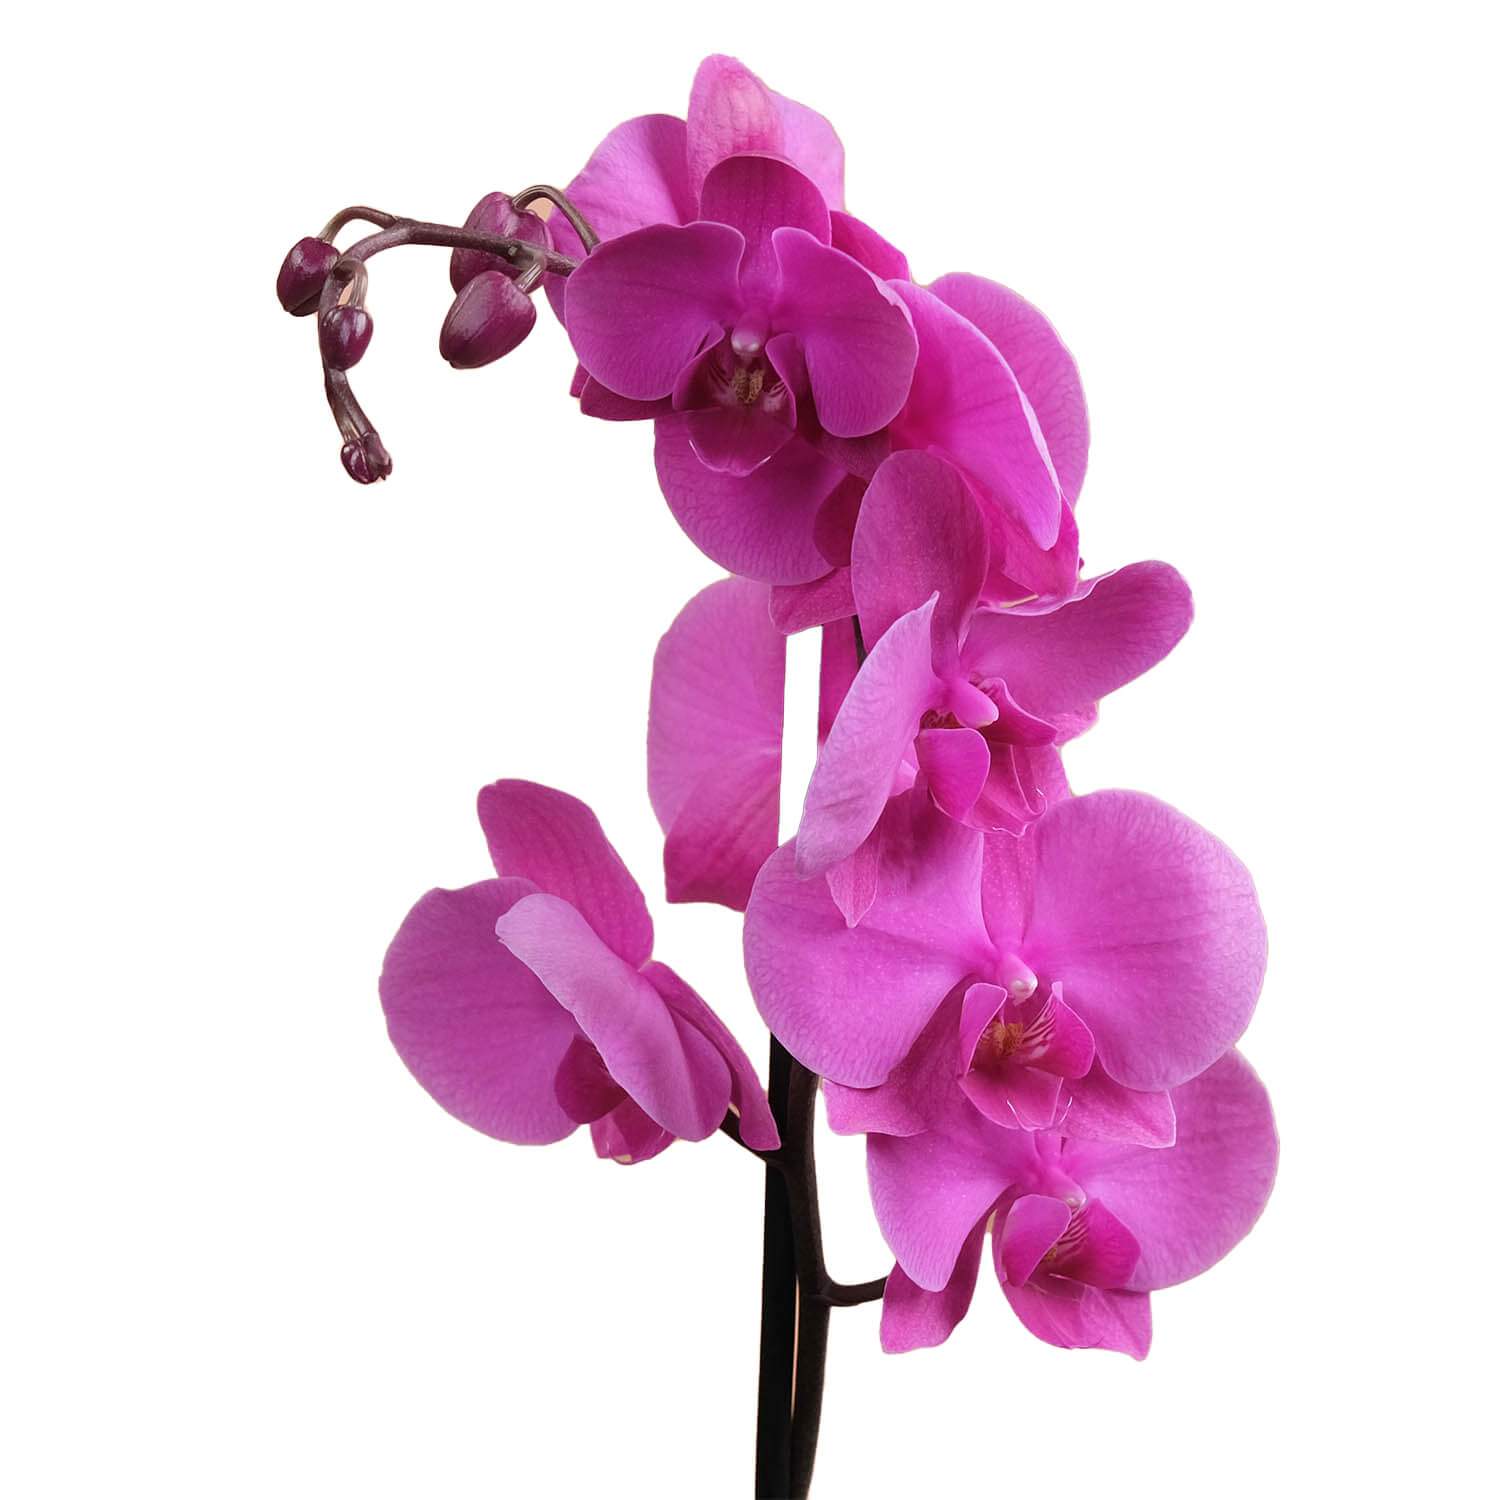 Capella – Mor & Fuşya Orkide